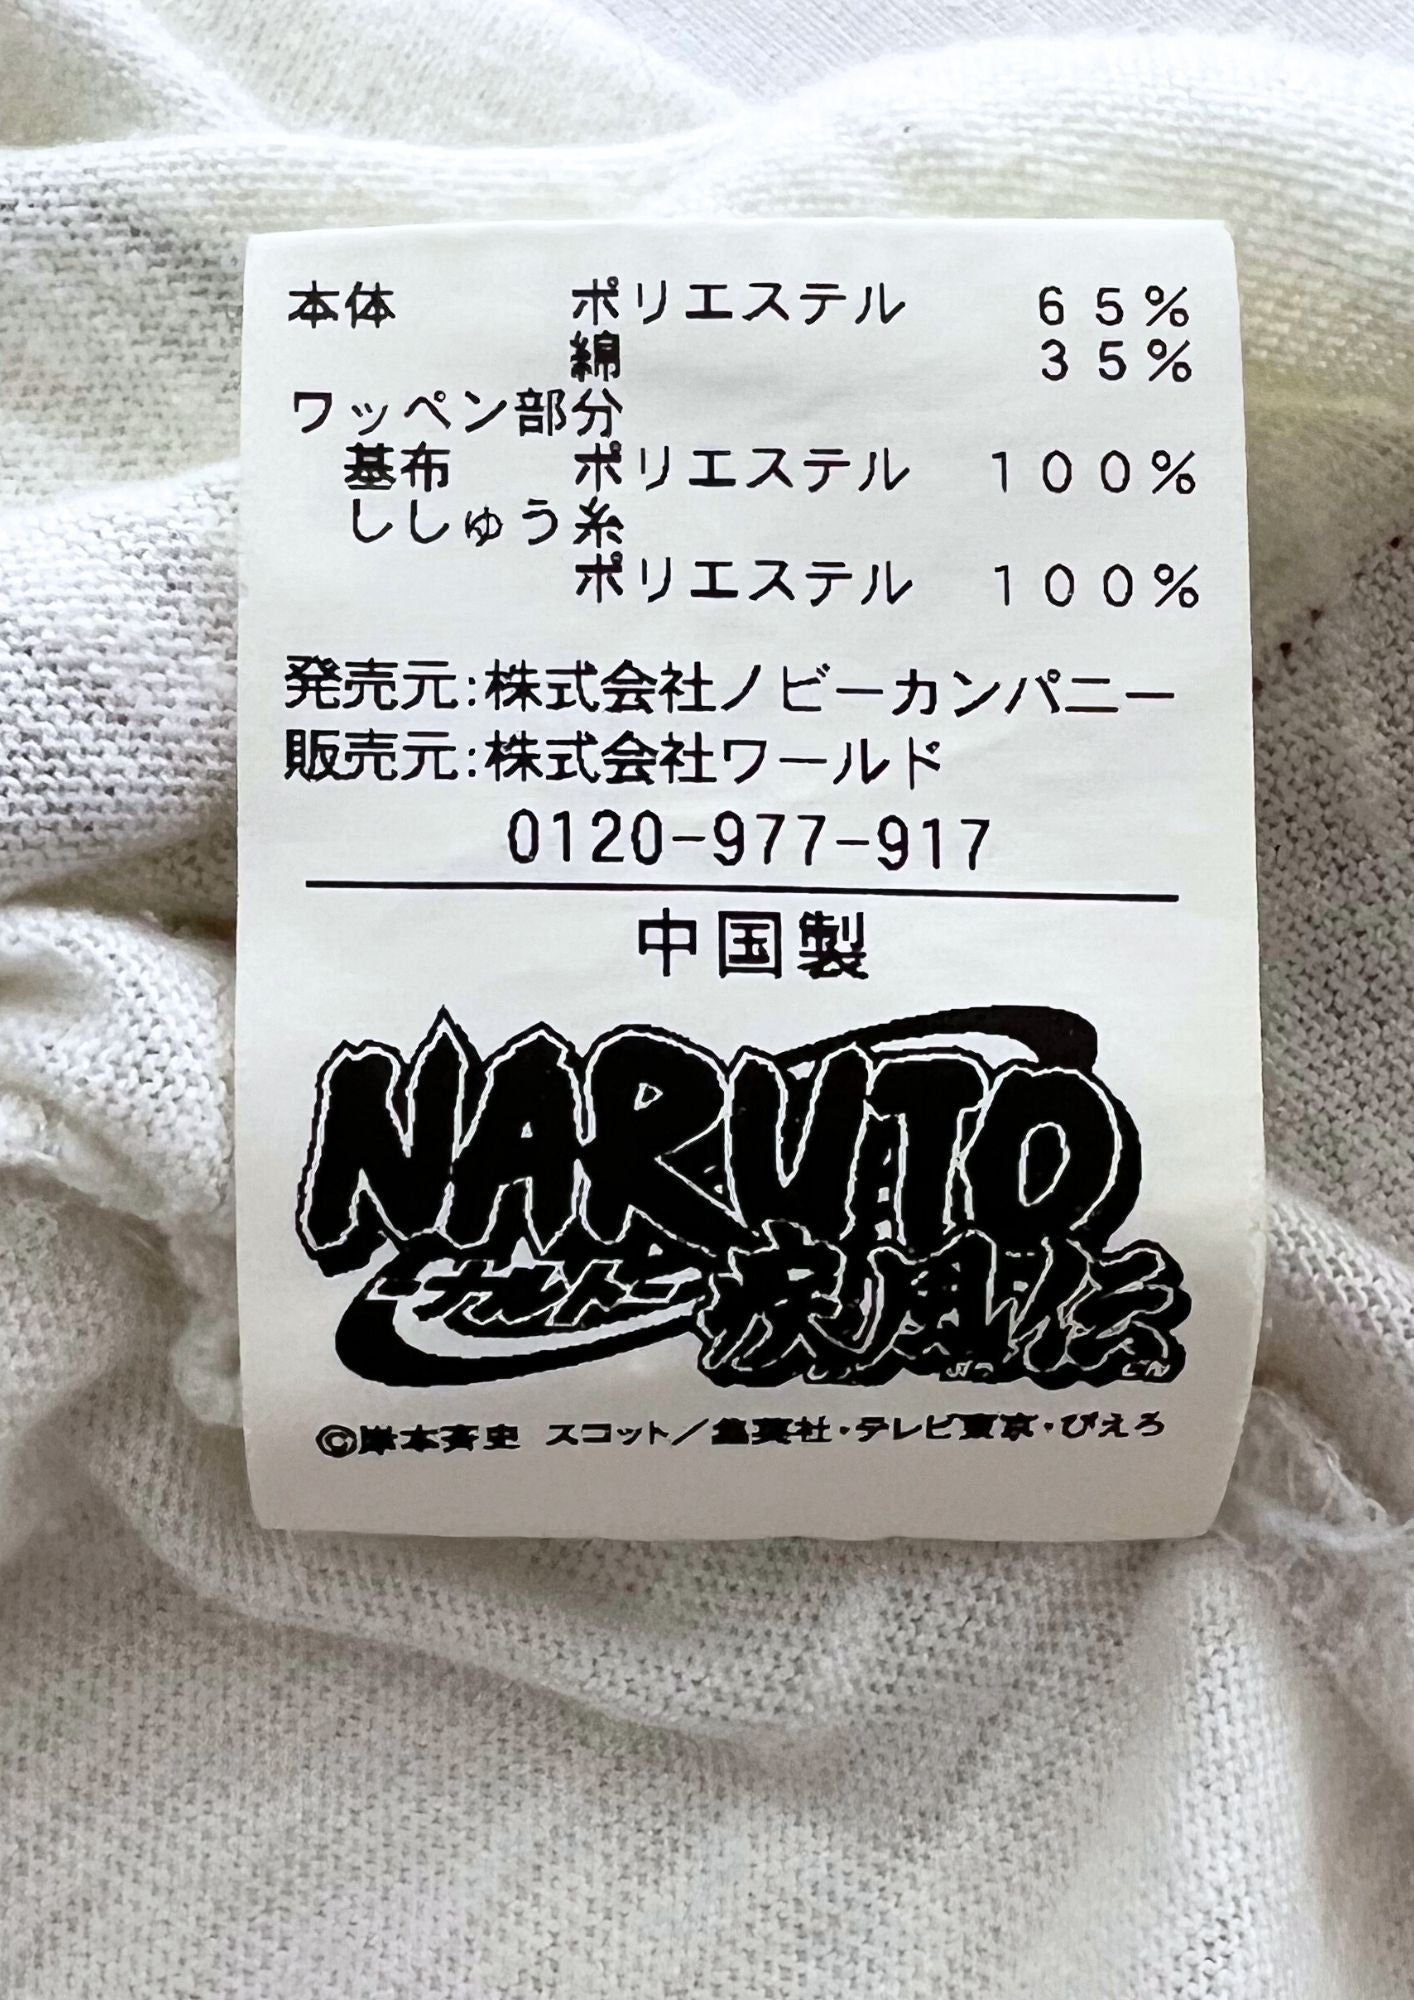 00s Naruto x TK MIXPICE Takeo Kikuchi Nine Tails T-shirt